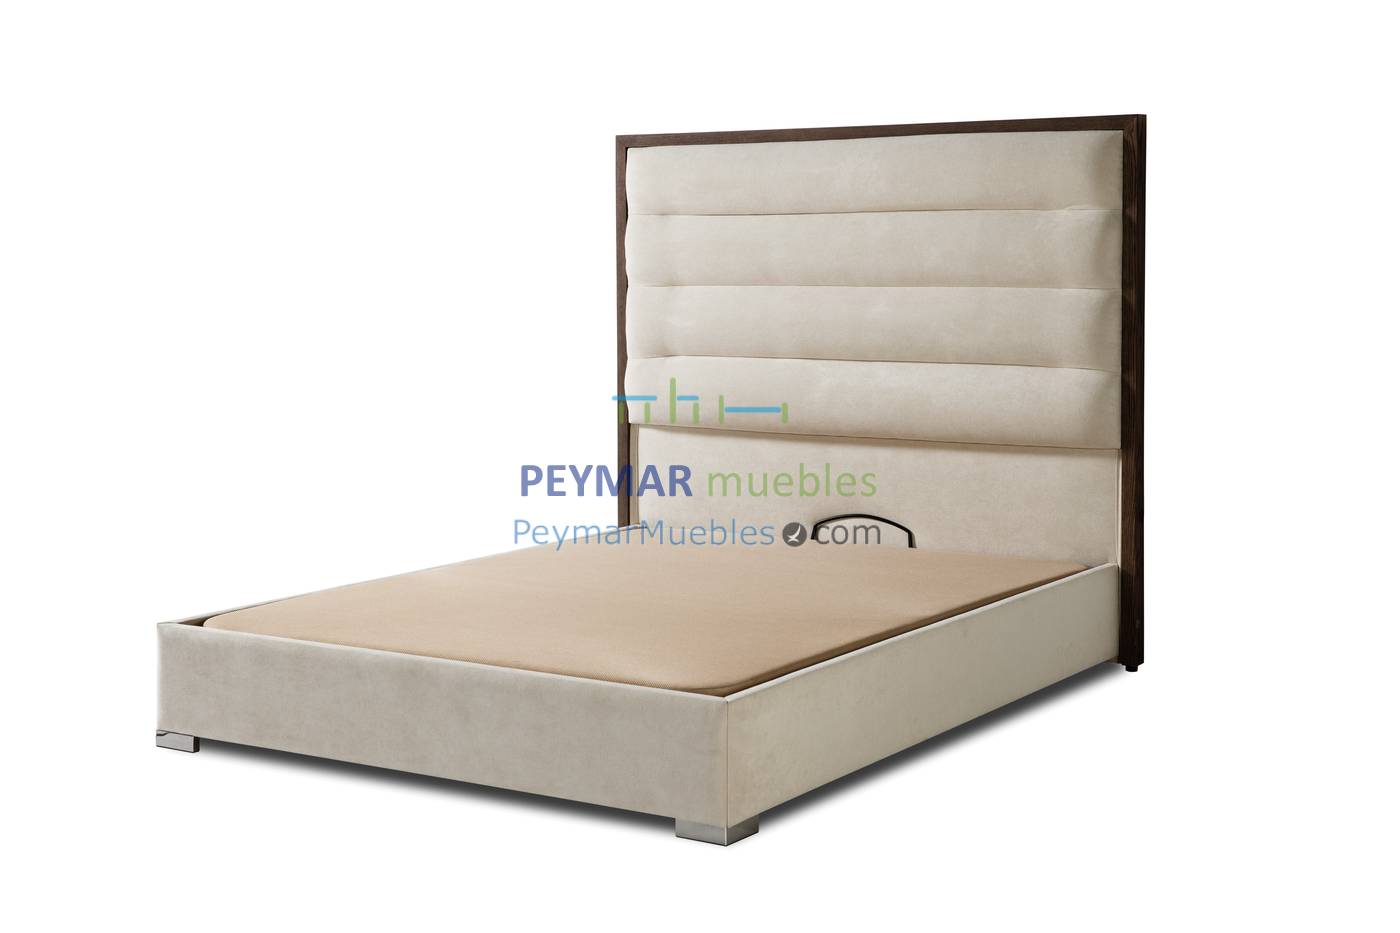 Cama Abatible LD Alexandra - Cama con canapé abatible tapizado en polipiel, tela o terciopelo, para cama de 150, 160 o 180 cm, disponible en varios colores.